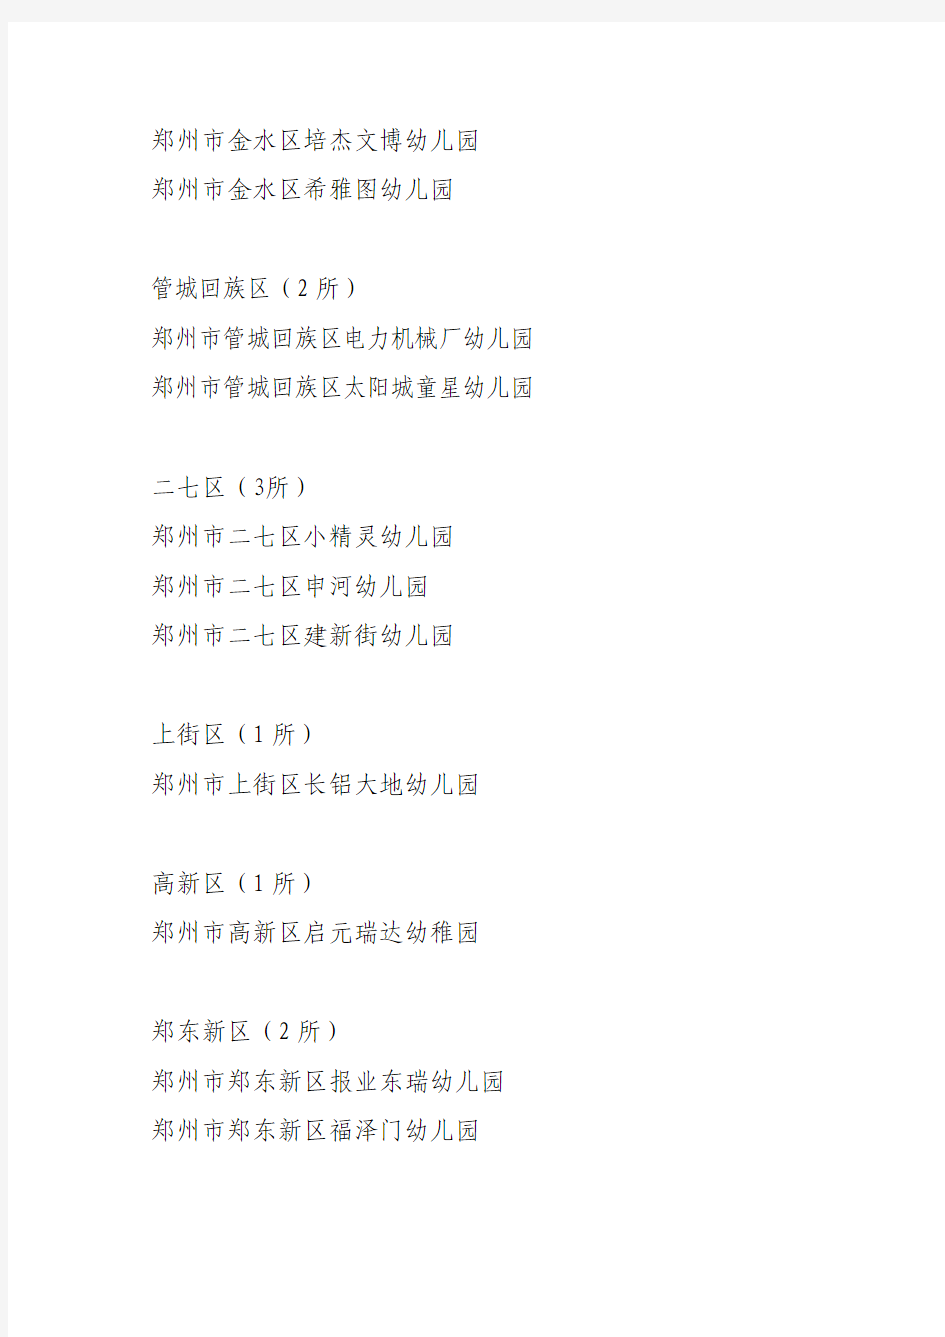 2013年郑州市等级幼儿园名单